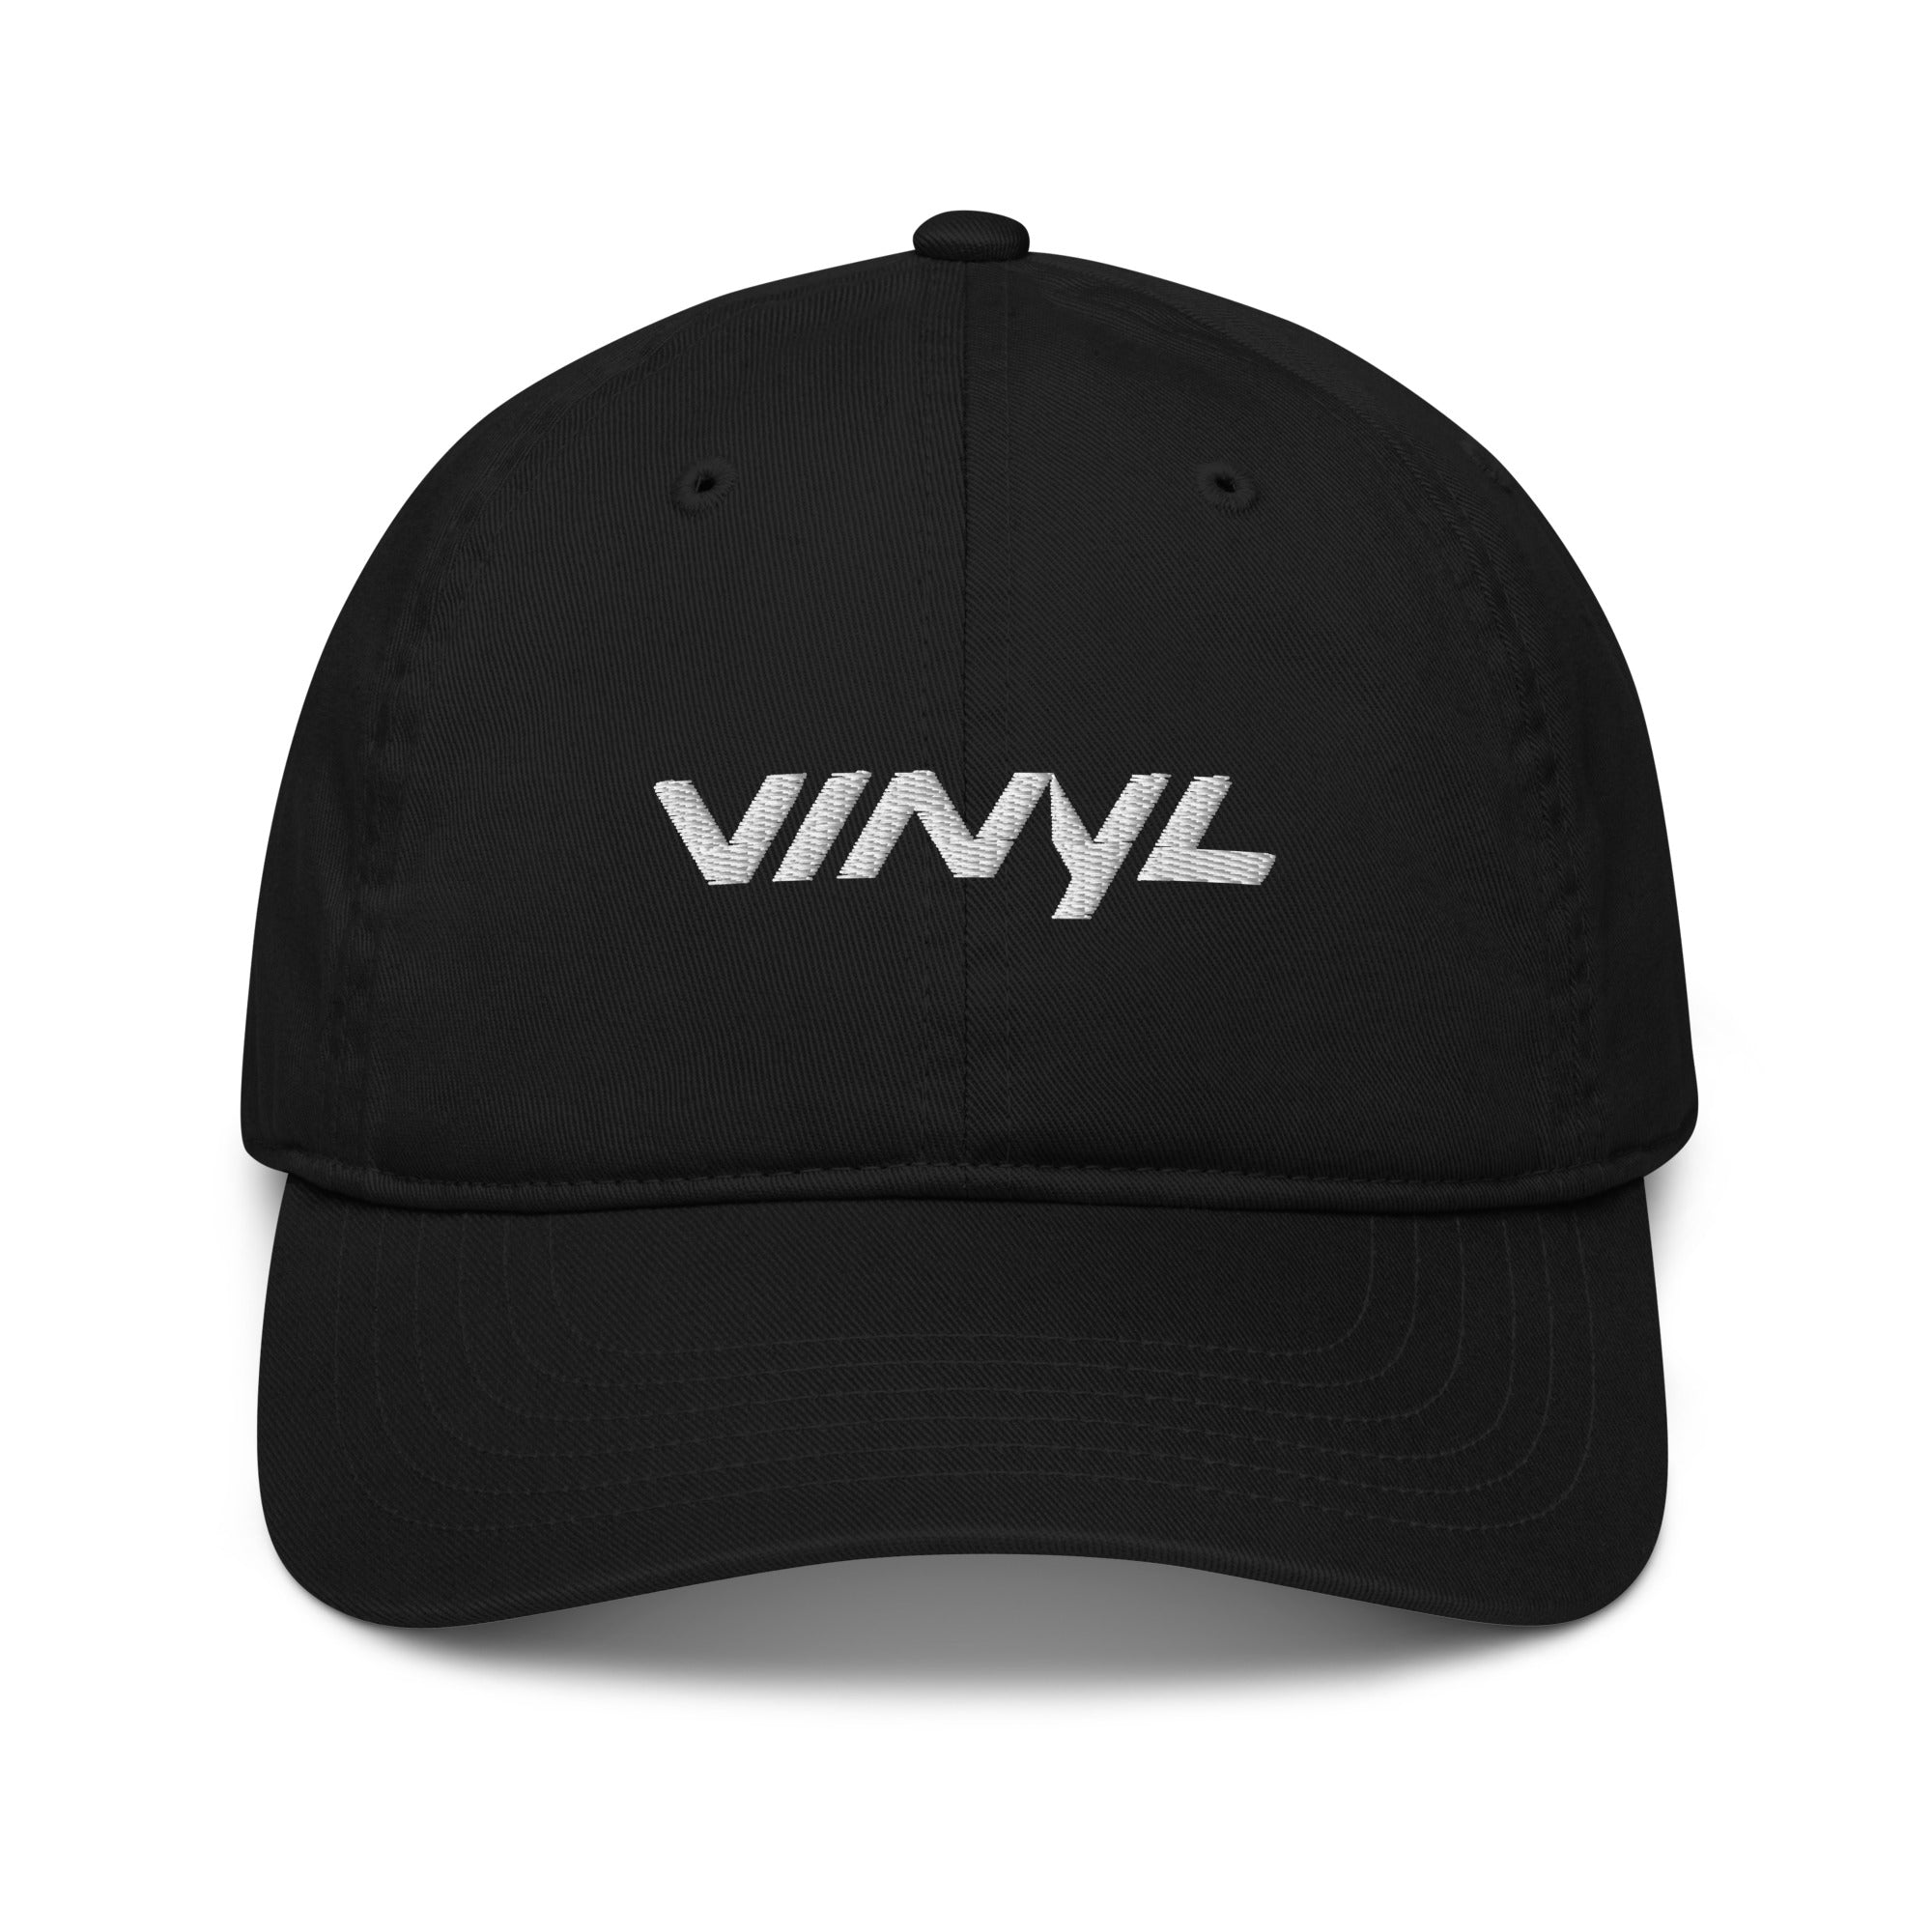 Vinyl Classic Dad Hat